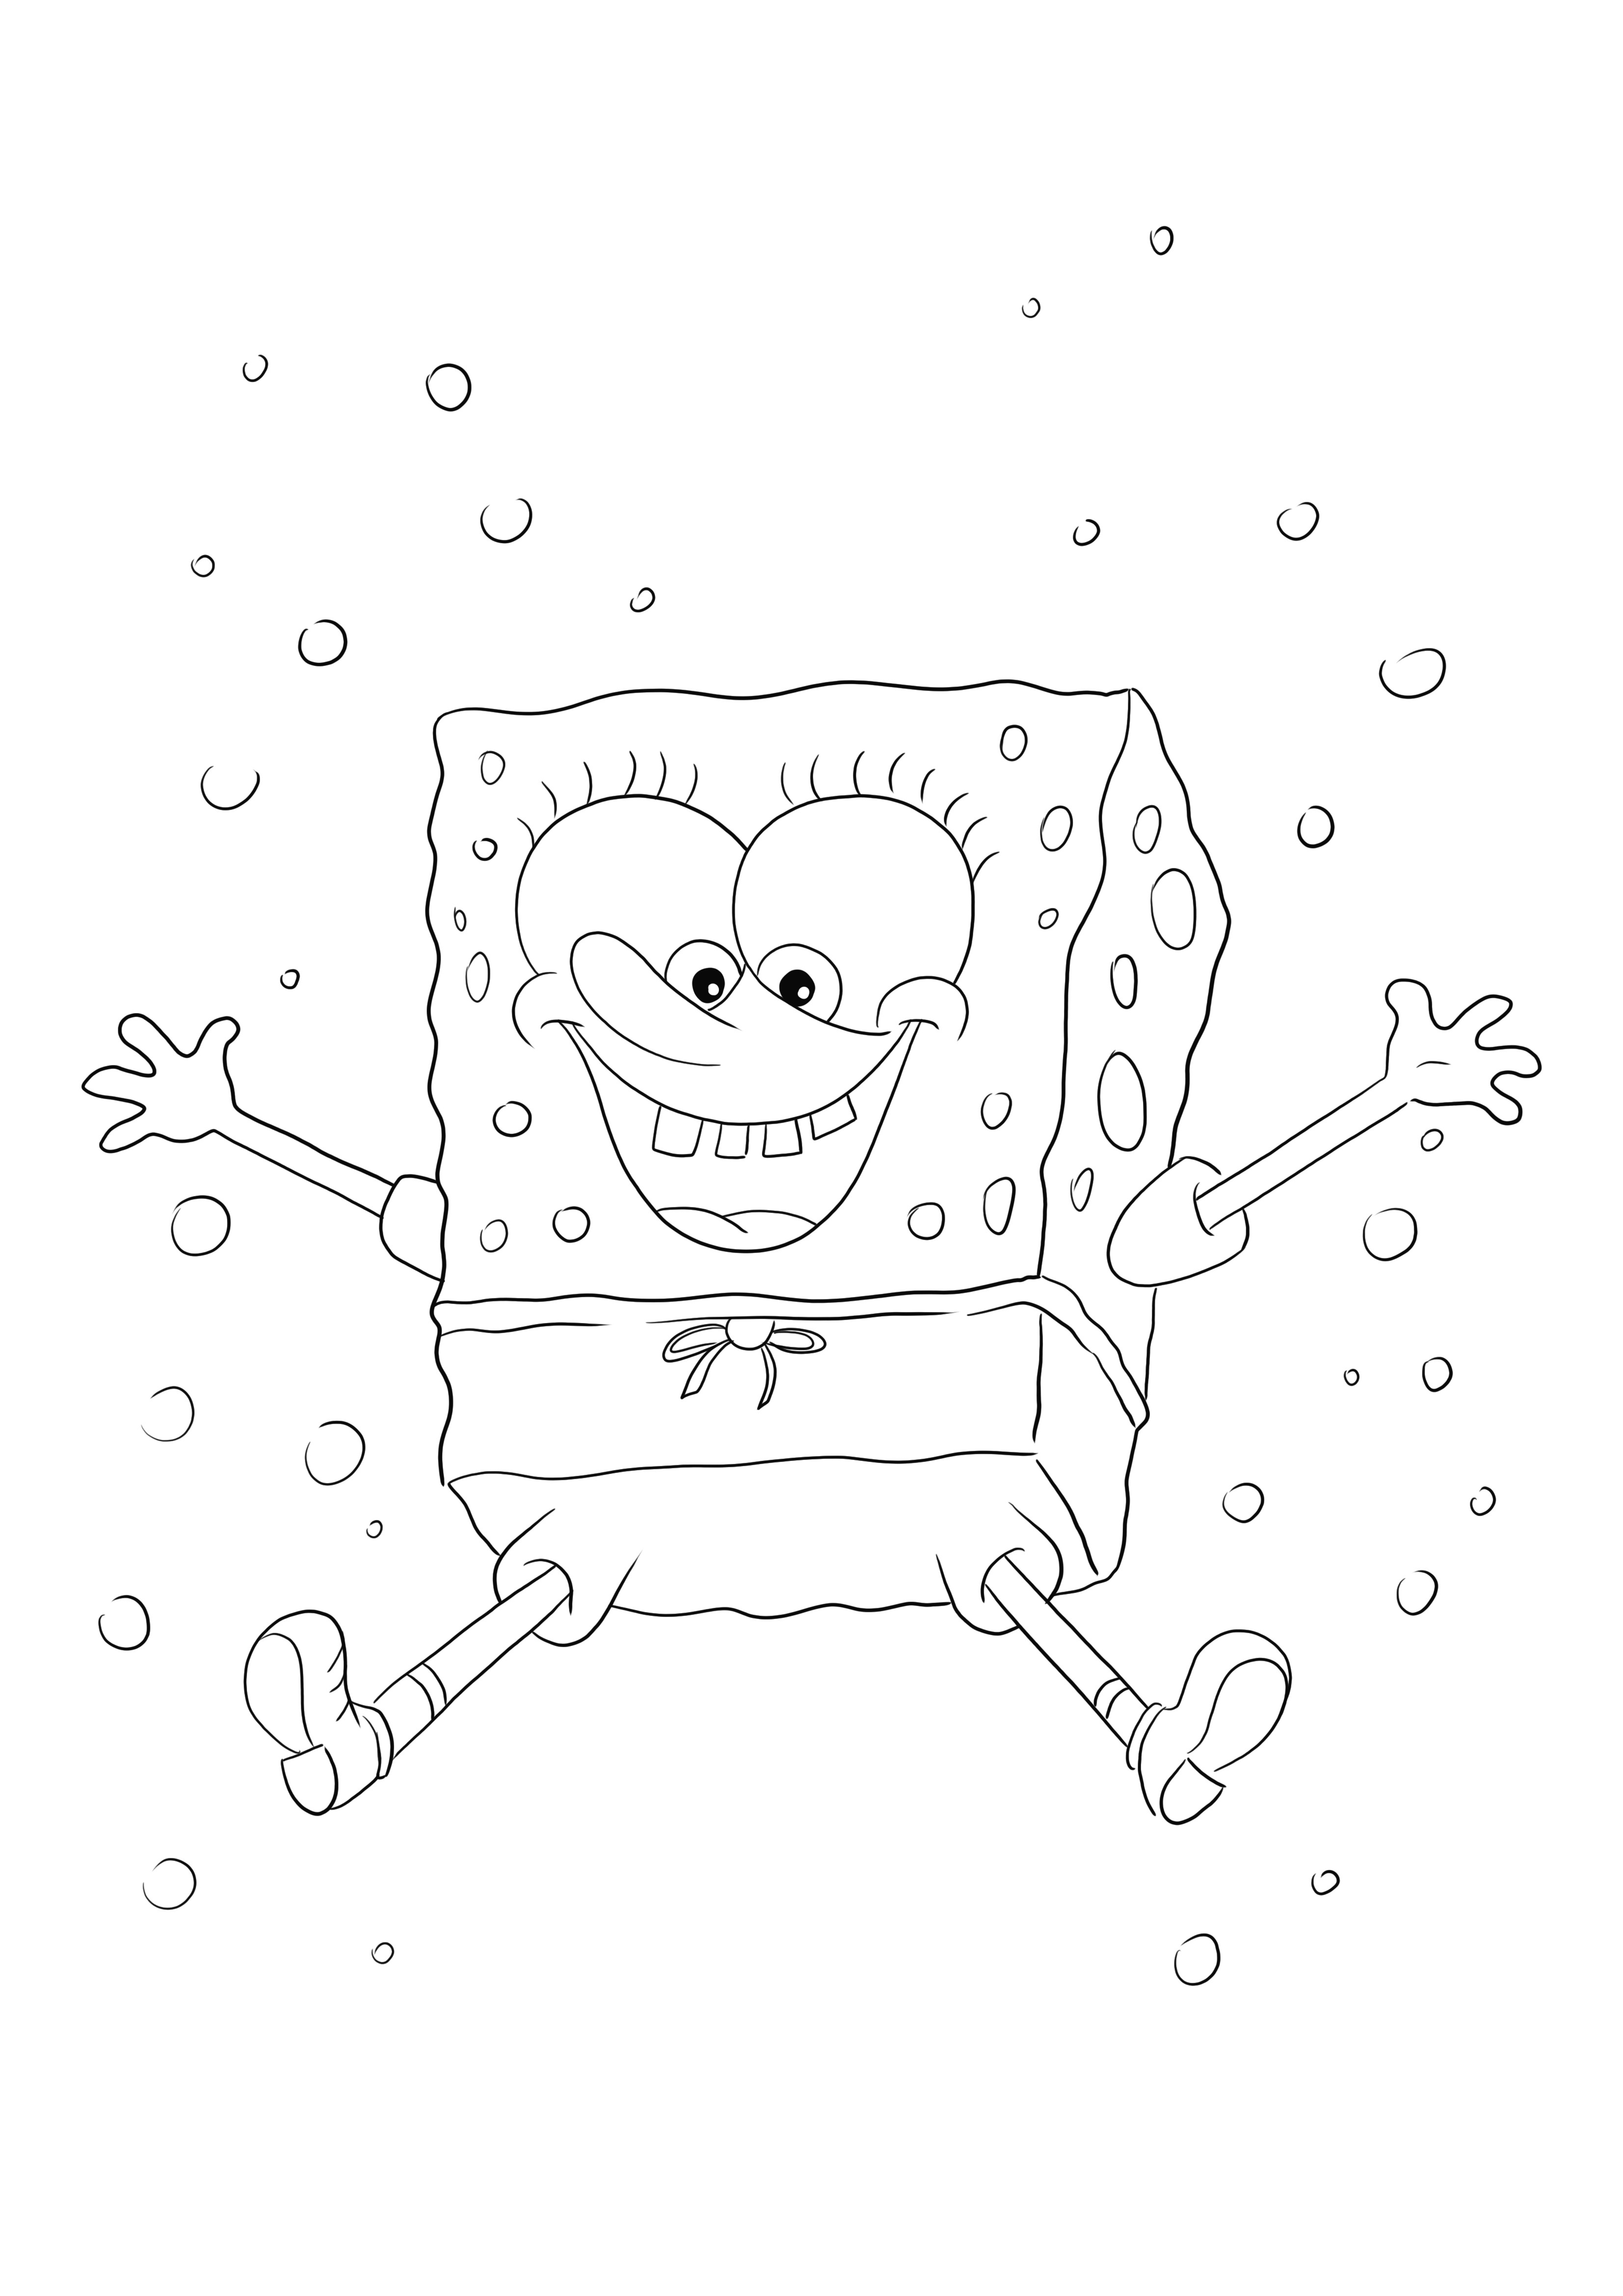 Mutlu dans eden SpongeBob Squarepants boyama sayfasını yazdırmak veya indirmek ücretsizdir